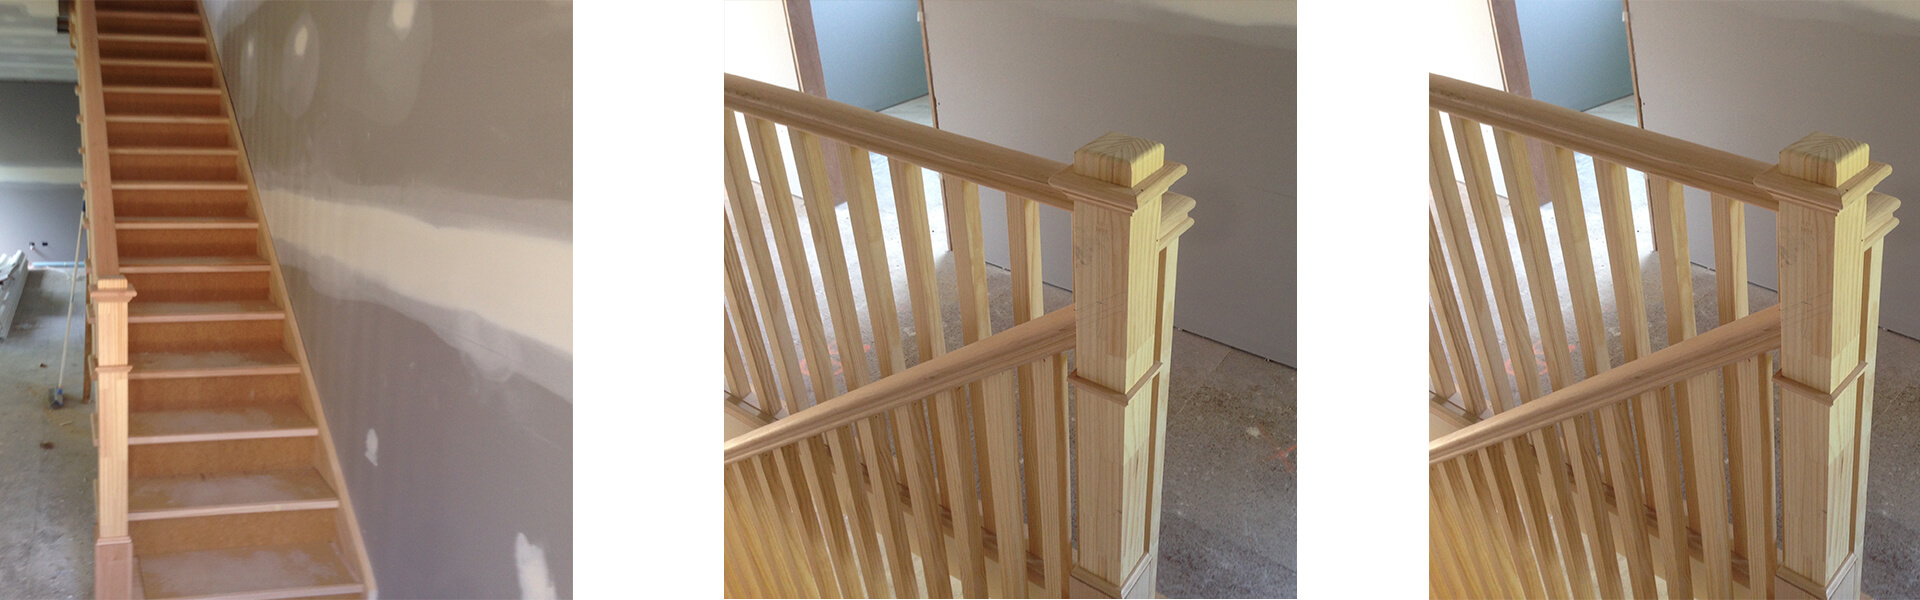 schody drewniane wewnętrzne proste nakładane z pełnymi podstopniami, balustrady drewniane do schodów z poręczą drewnianą